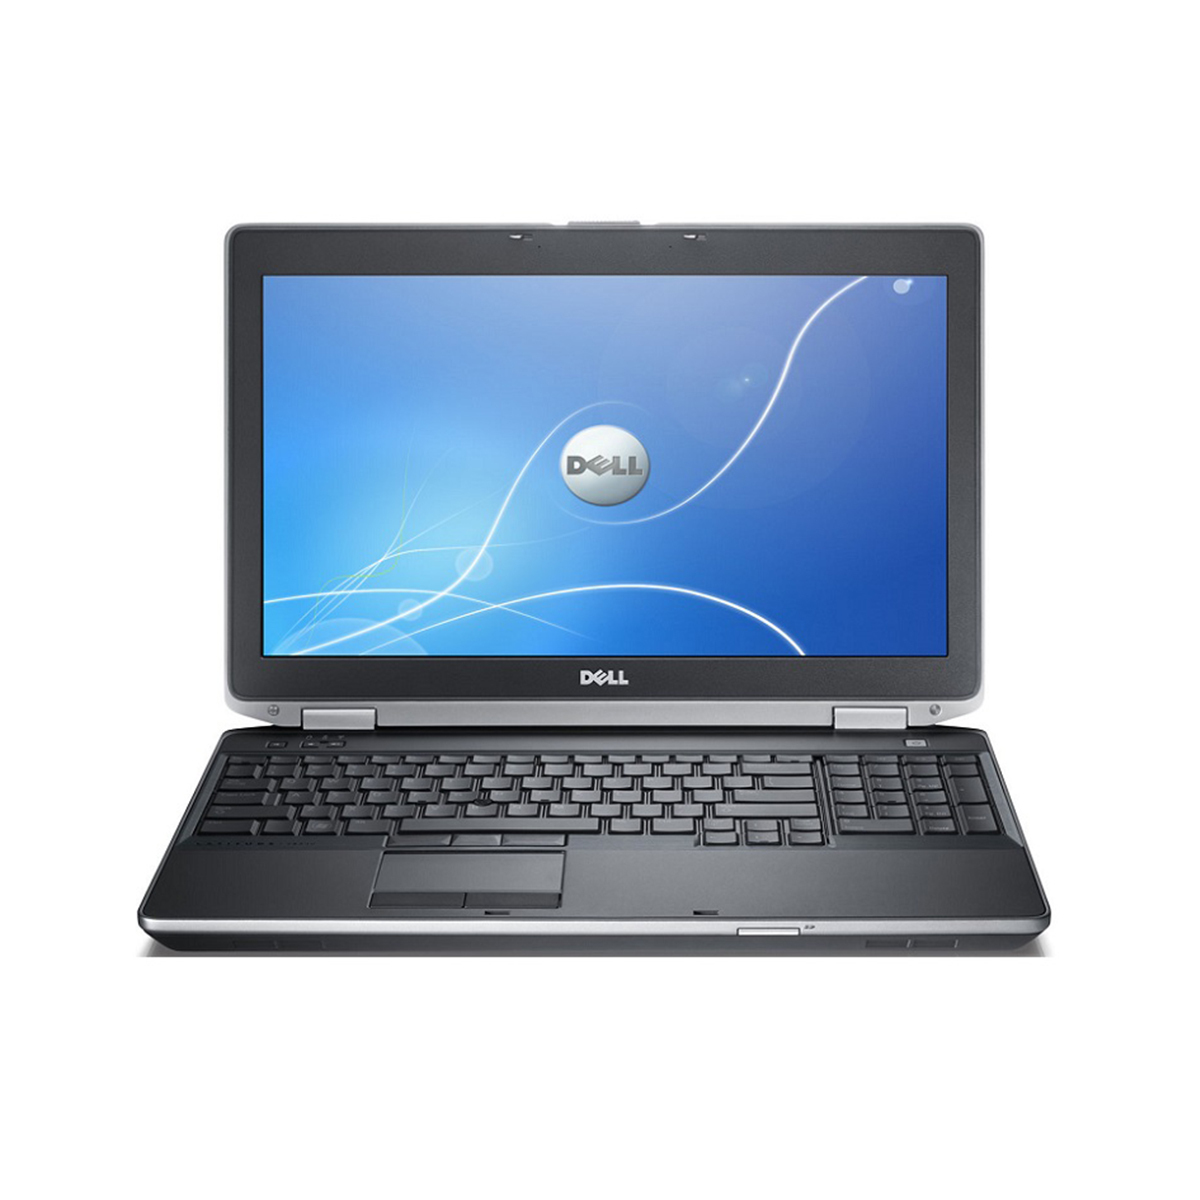 Laptop Dell Latitude E6530 - Intel core i5, 4GB RAM, HDD 250GB, Intel HD Graphics 4000, 15.6 inch